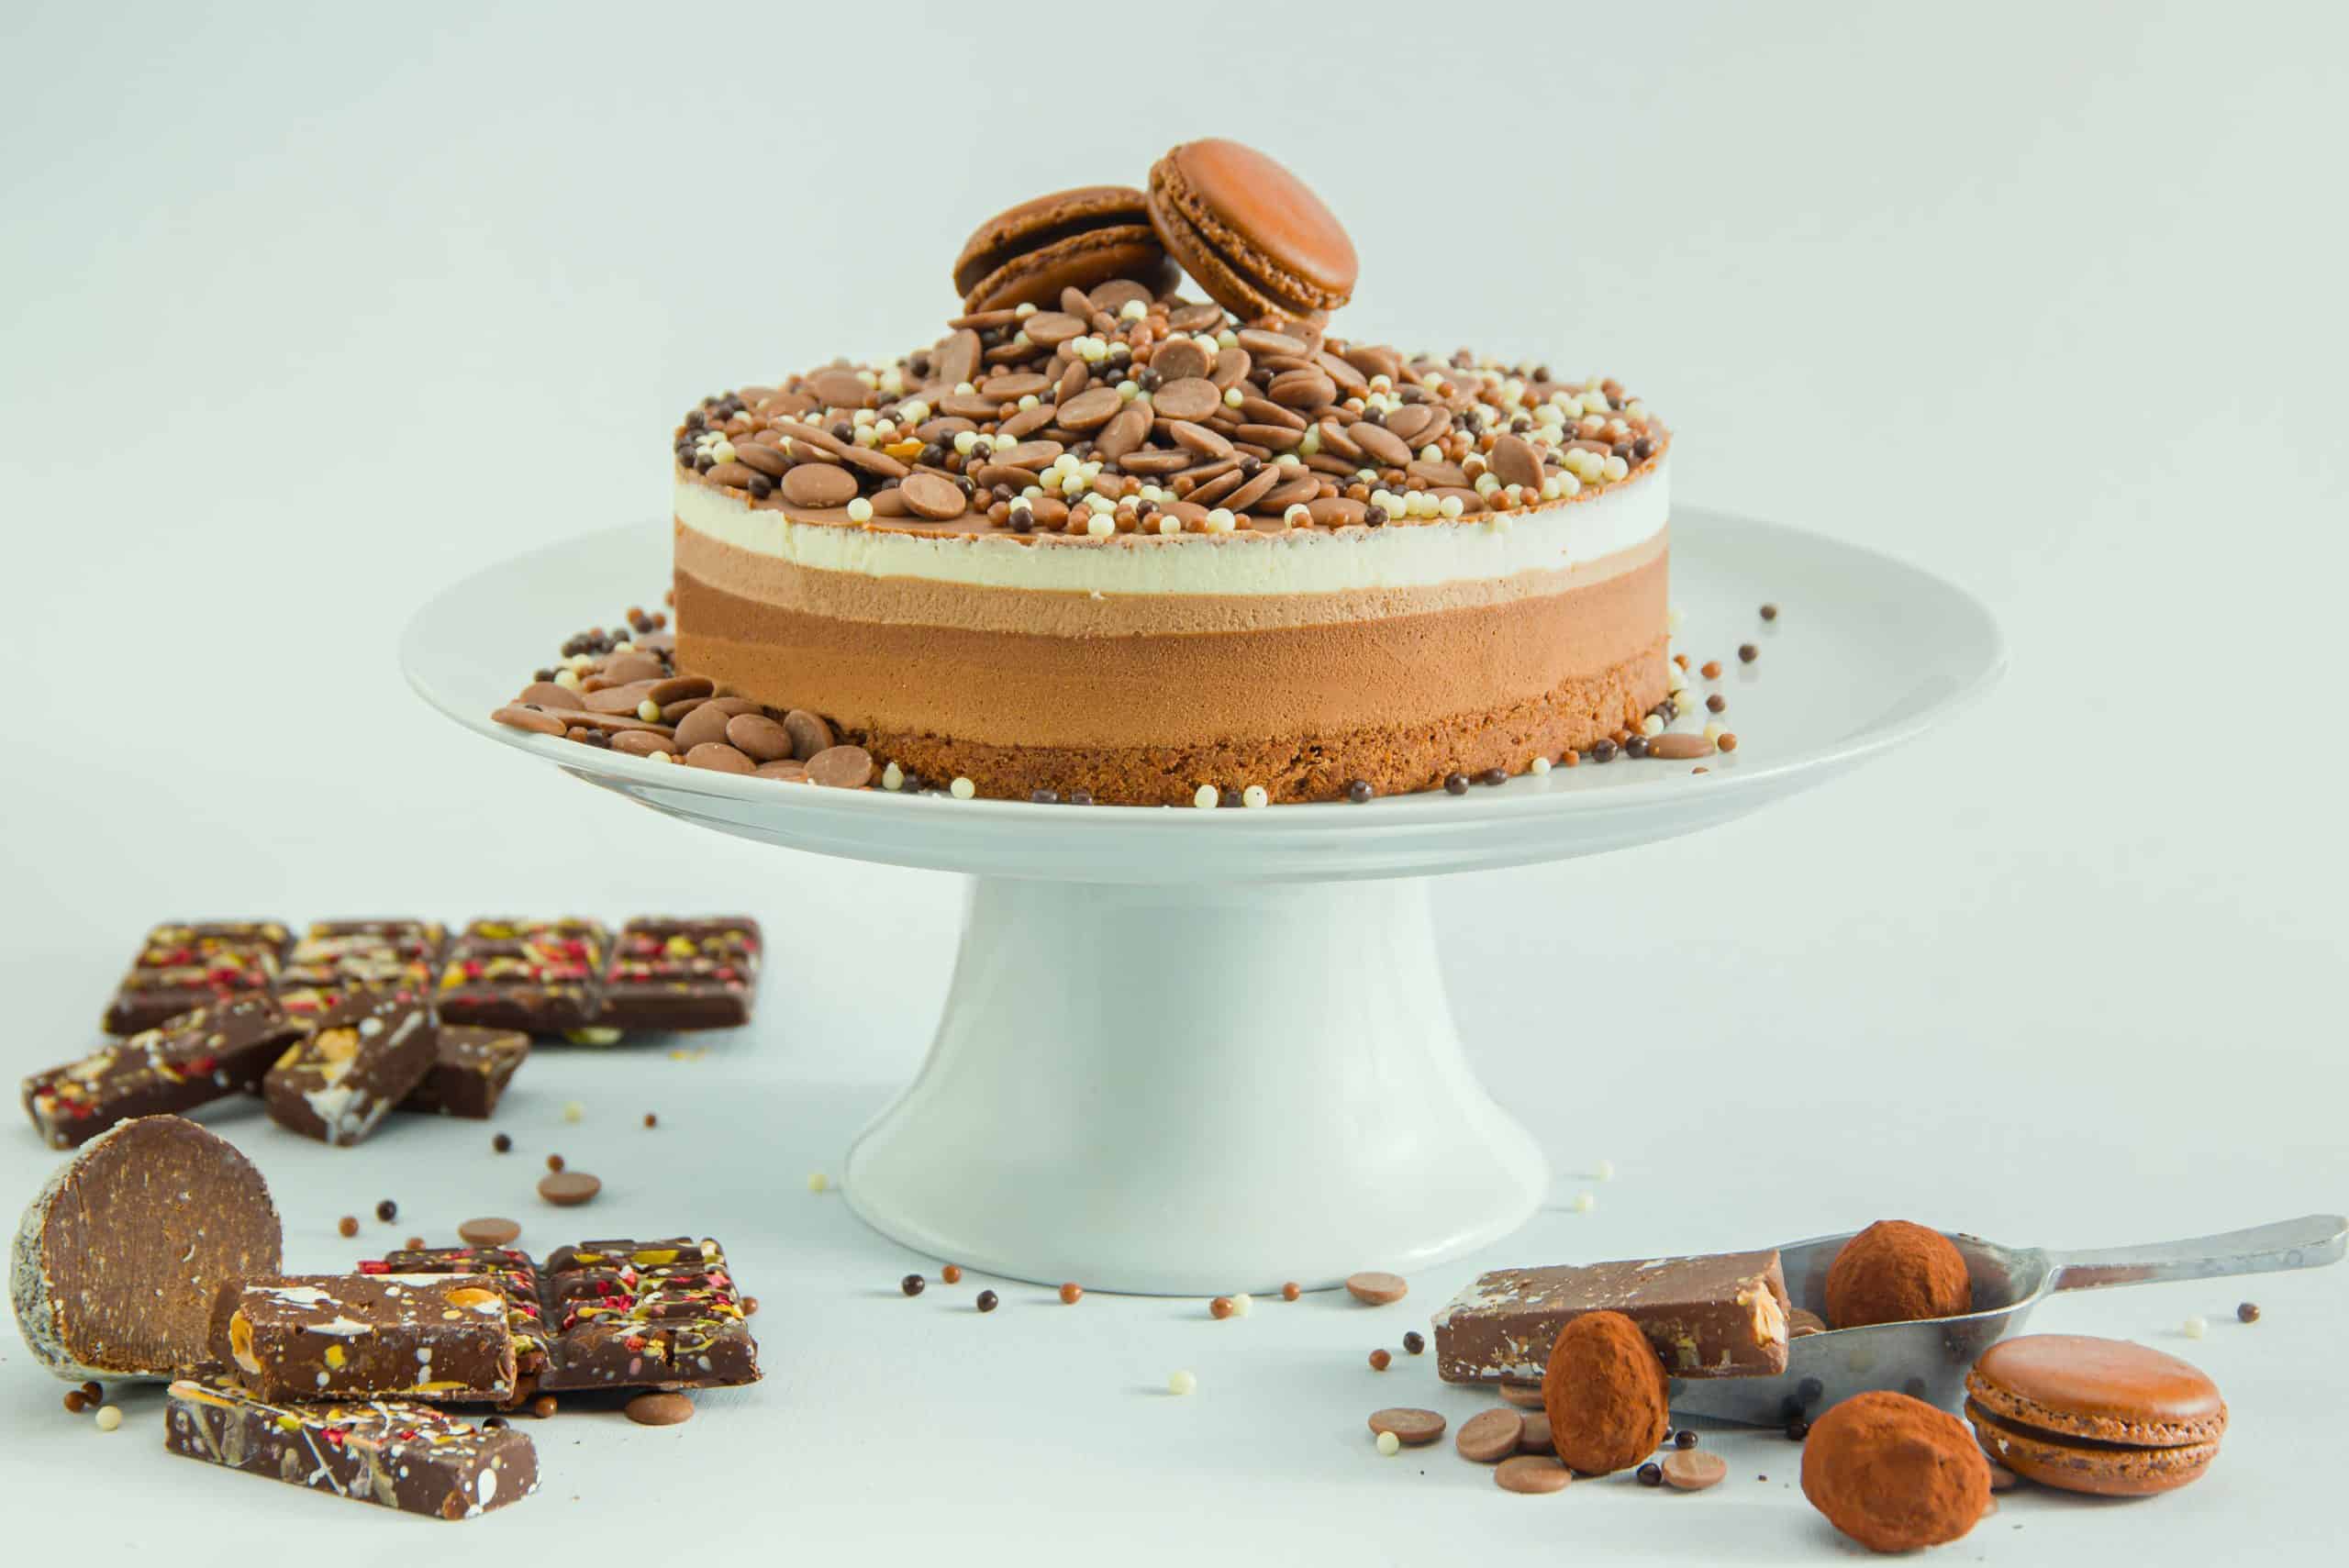 רשת ביגה מפנקת עם מתכון לעוגת שוקולד 'טריקולד' וללא גלוטן